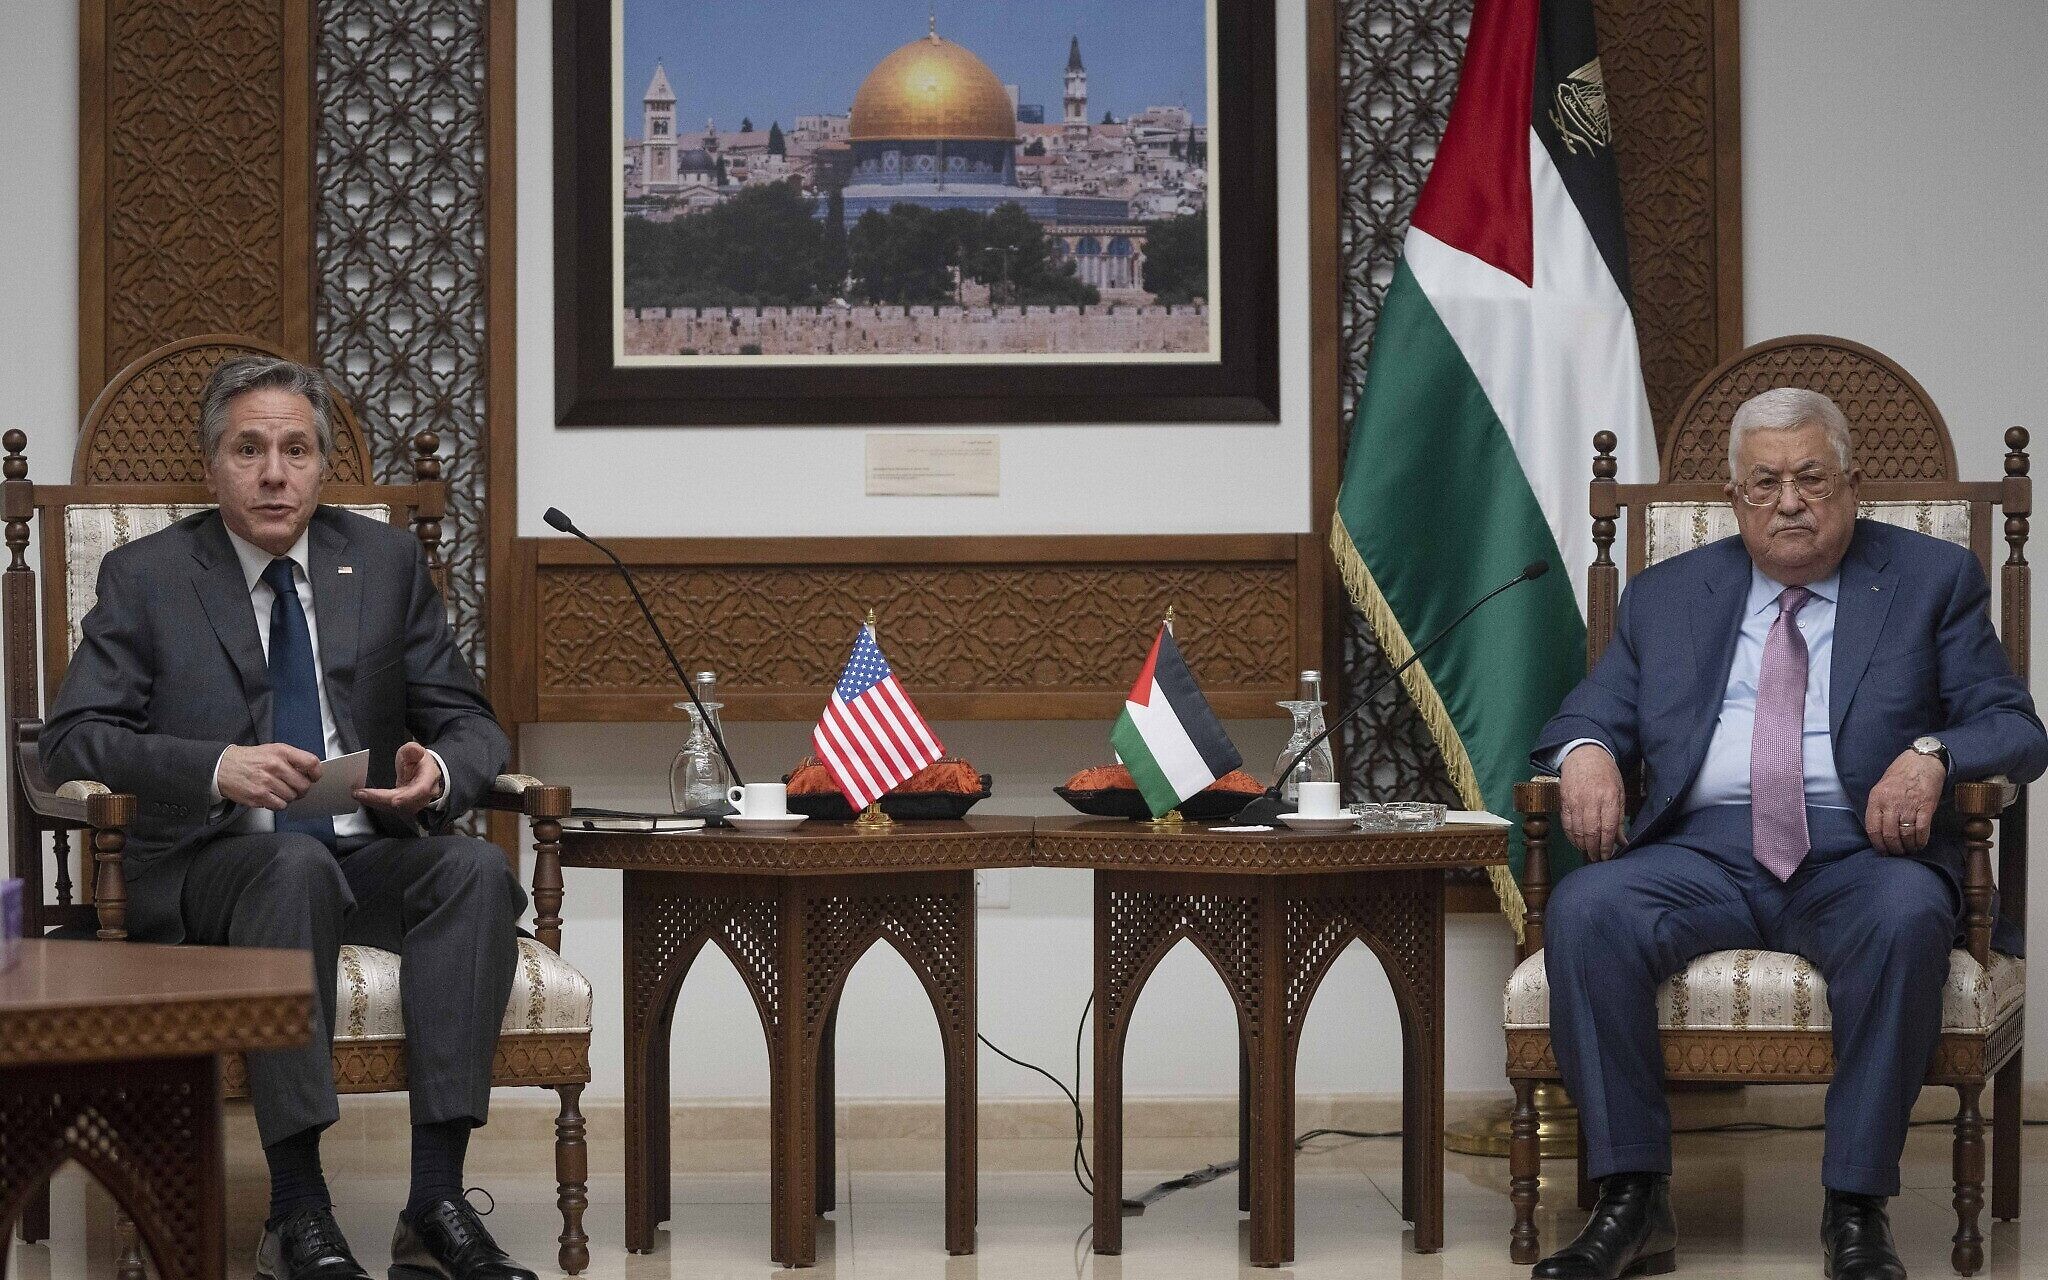 بلينكن يلتقي الرئيس الفلسطيني في زيارة غير معلنة للضفة الغربية